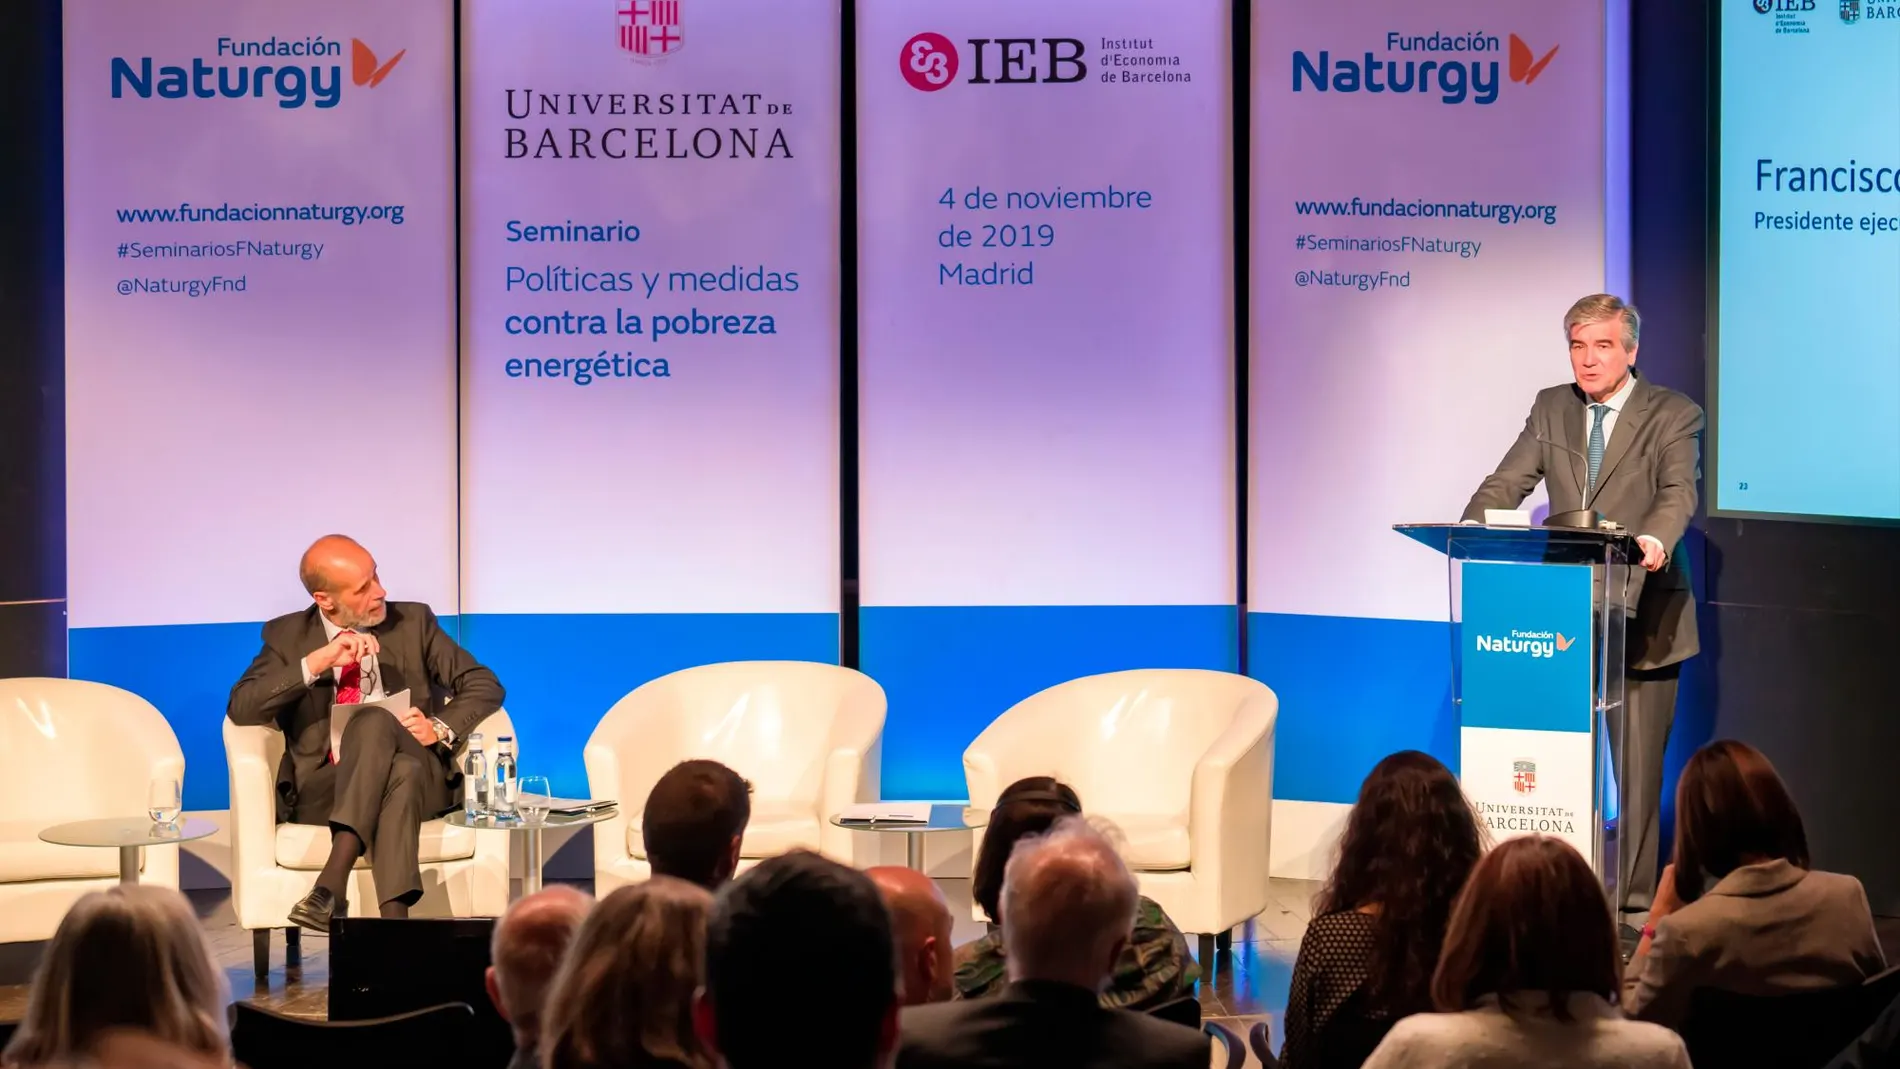 Francisco Reynés, presidente ejecutivo de Naturgy, y José Domínguez Abascal, secretario de Estado de Energía del Ministerio para la Transición Ecológica